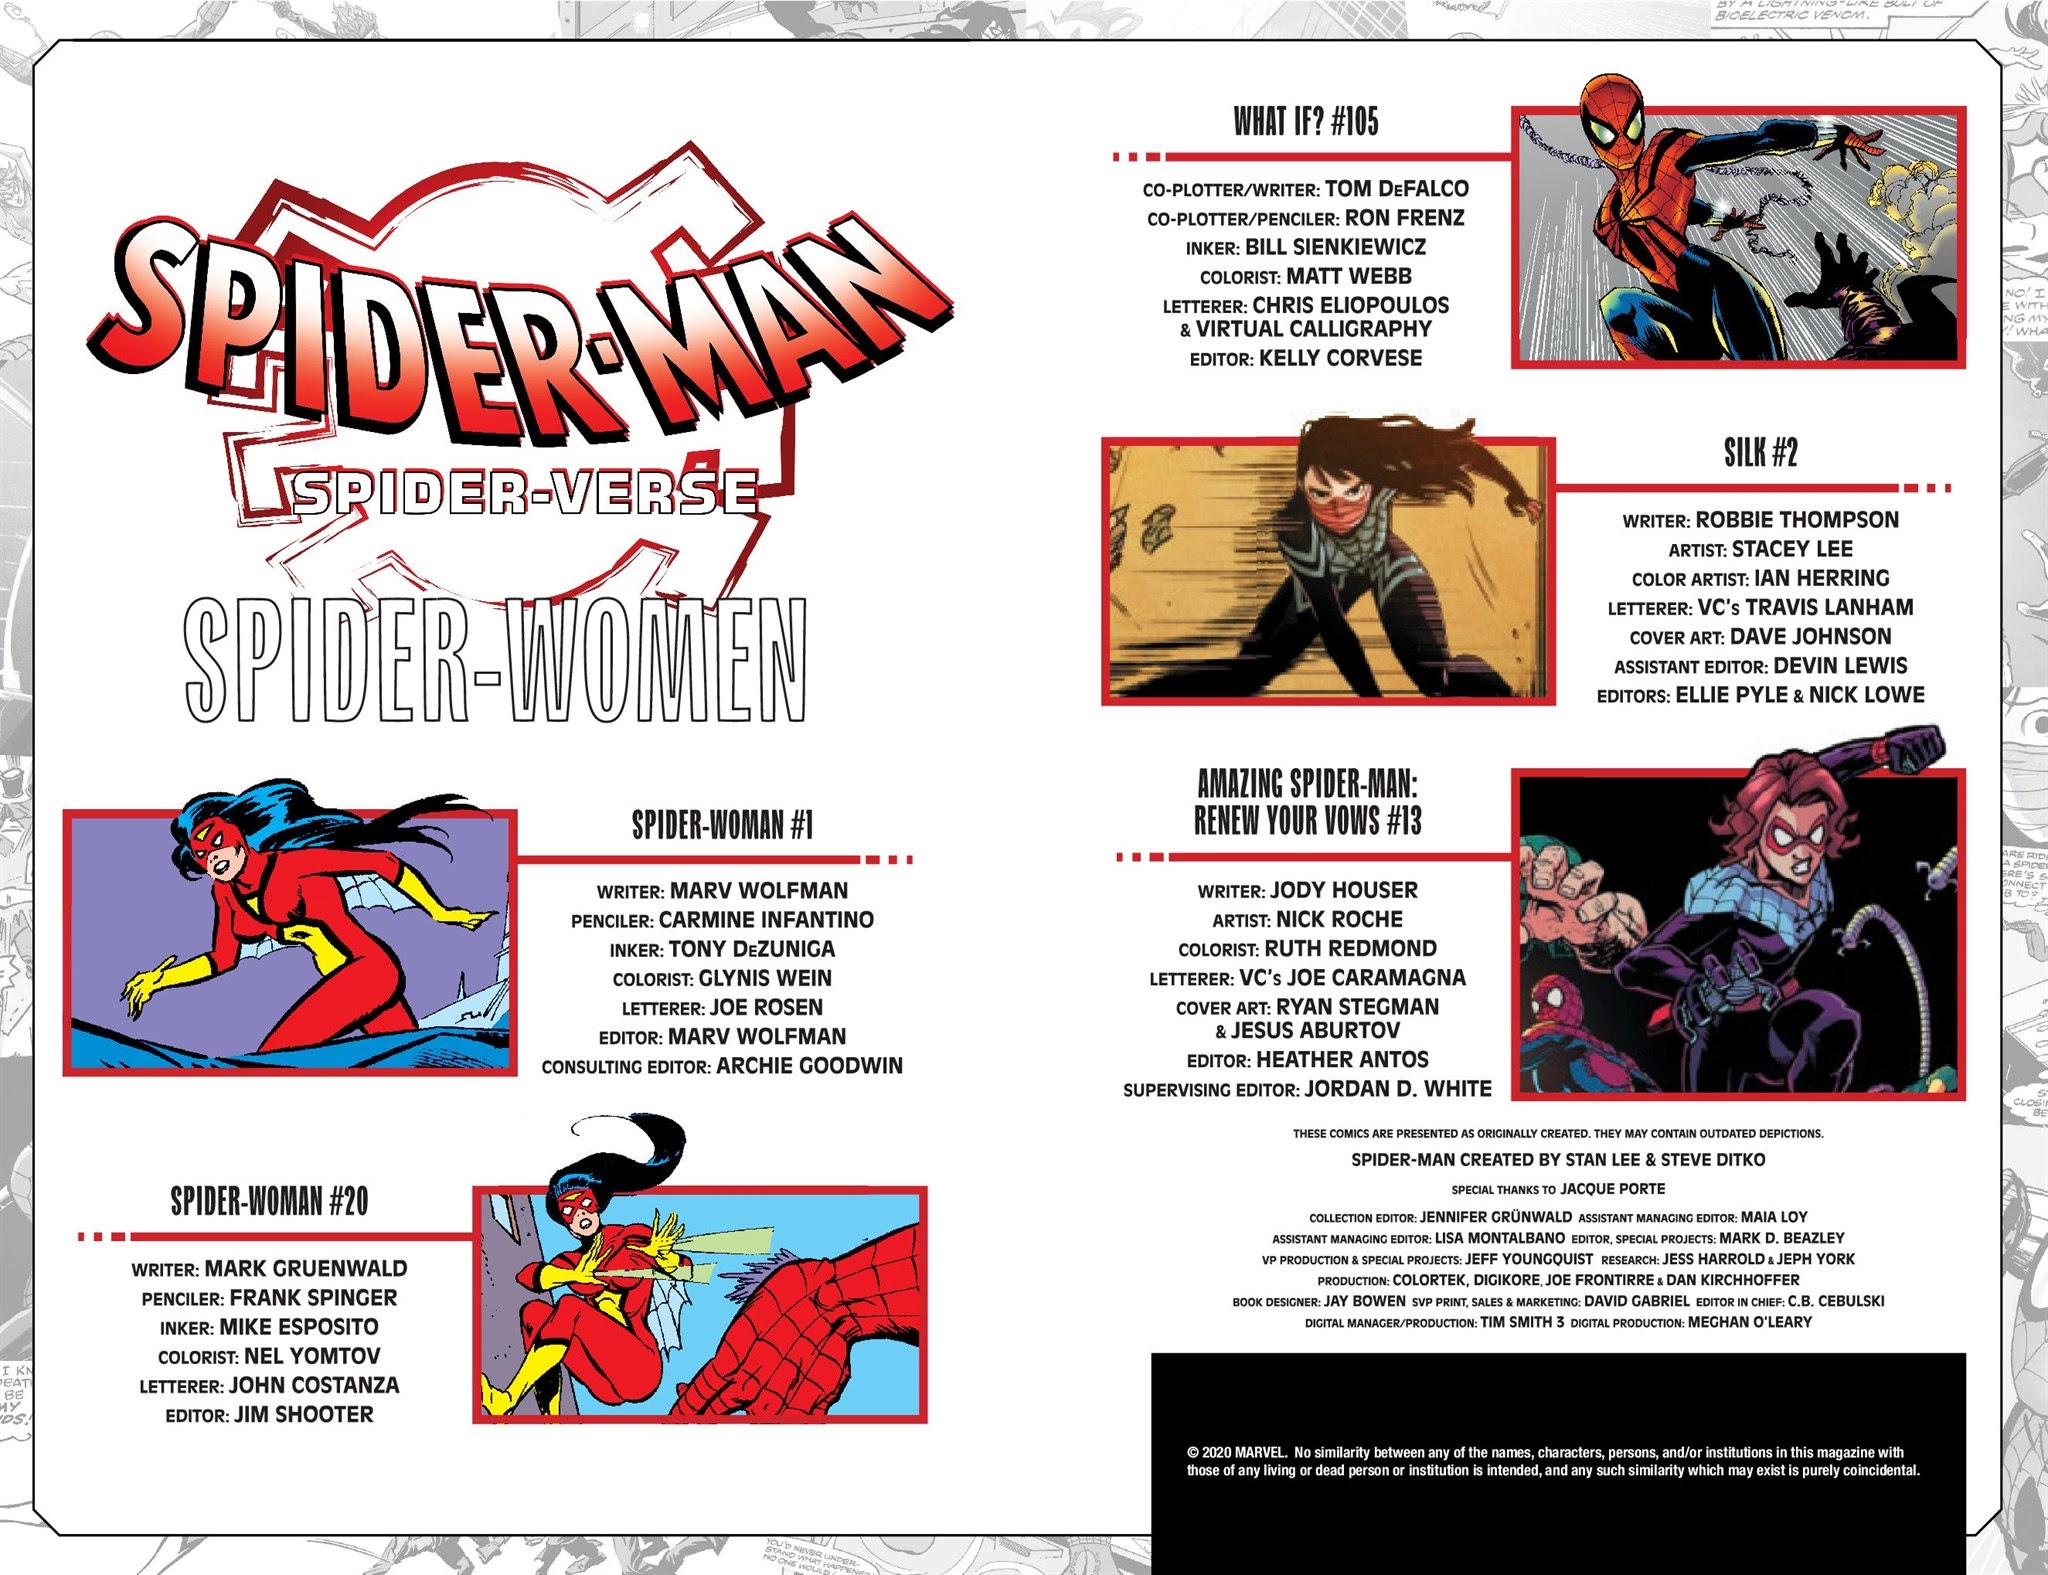 Read online Spider-Man: Spider-Verse comic -  Issue # Spider-Women - 3